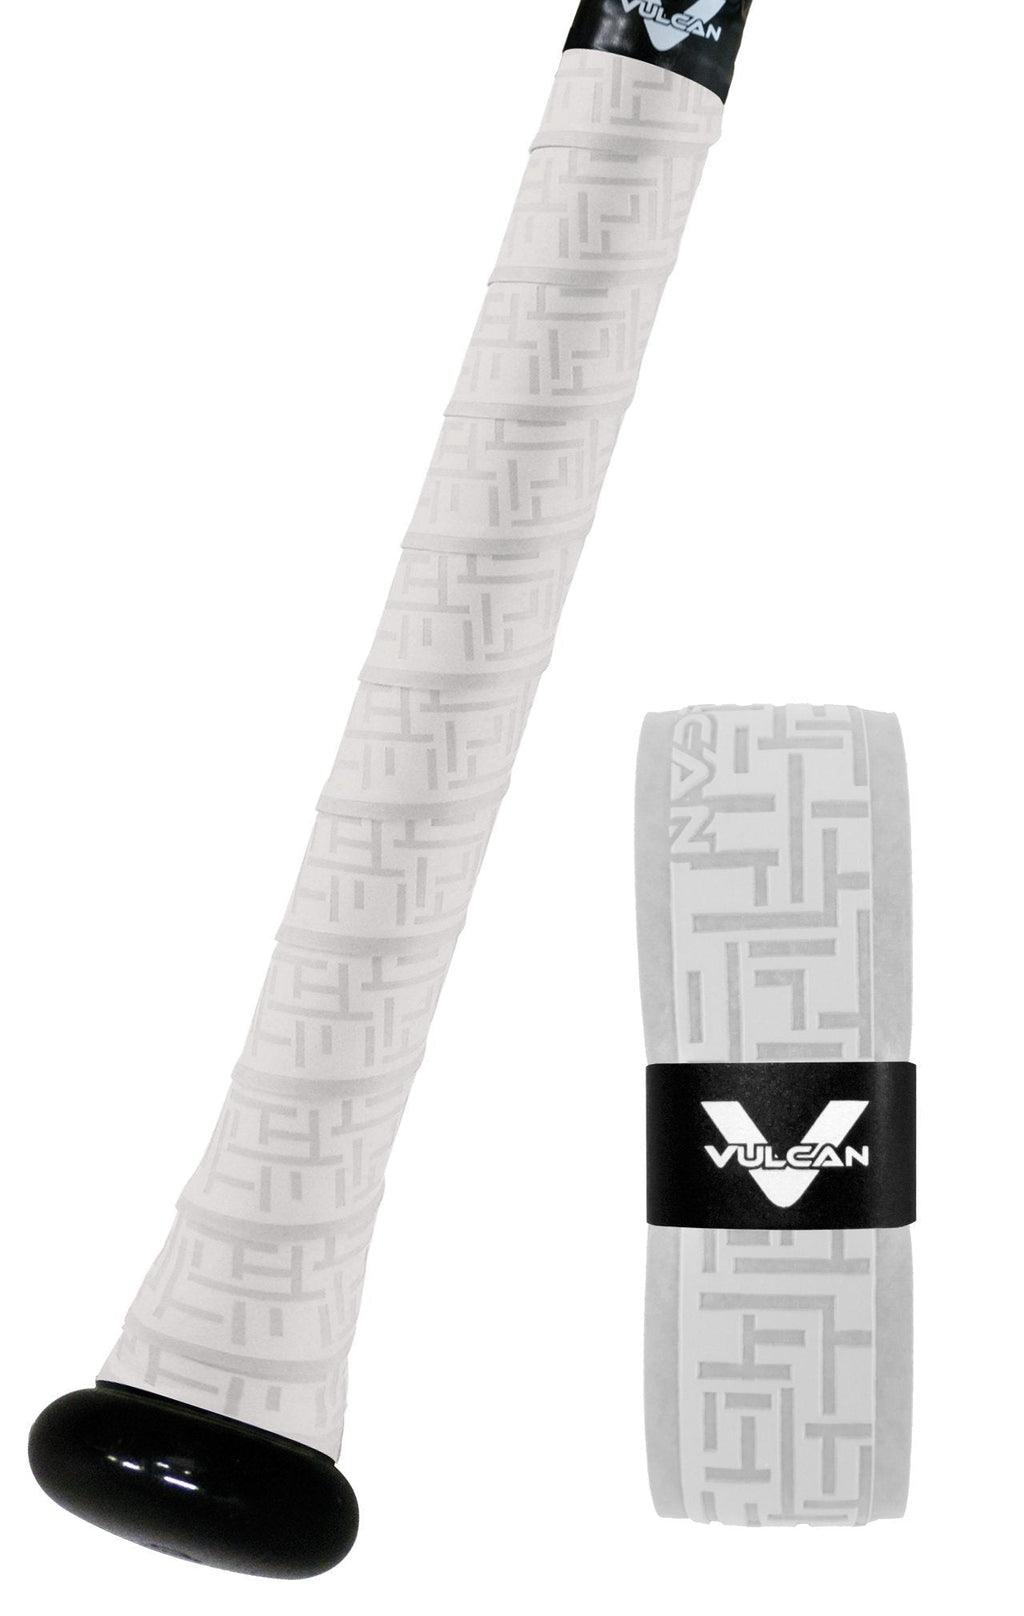 [AUSTRALIA] - Vulcan Sporting Goods Co. 0.50mm Bat Grip/White (V050-W) 